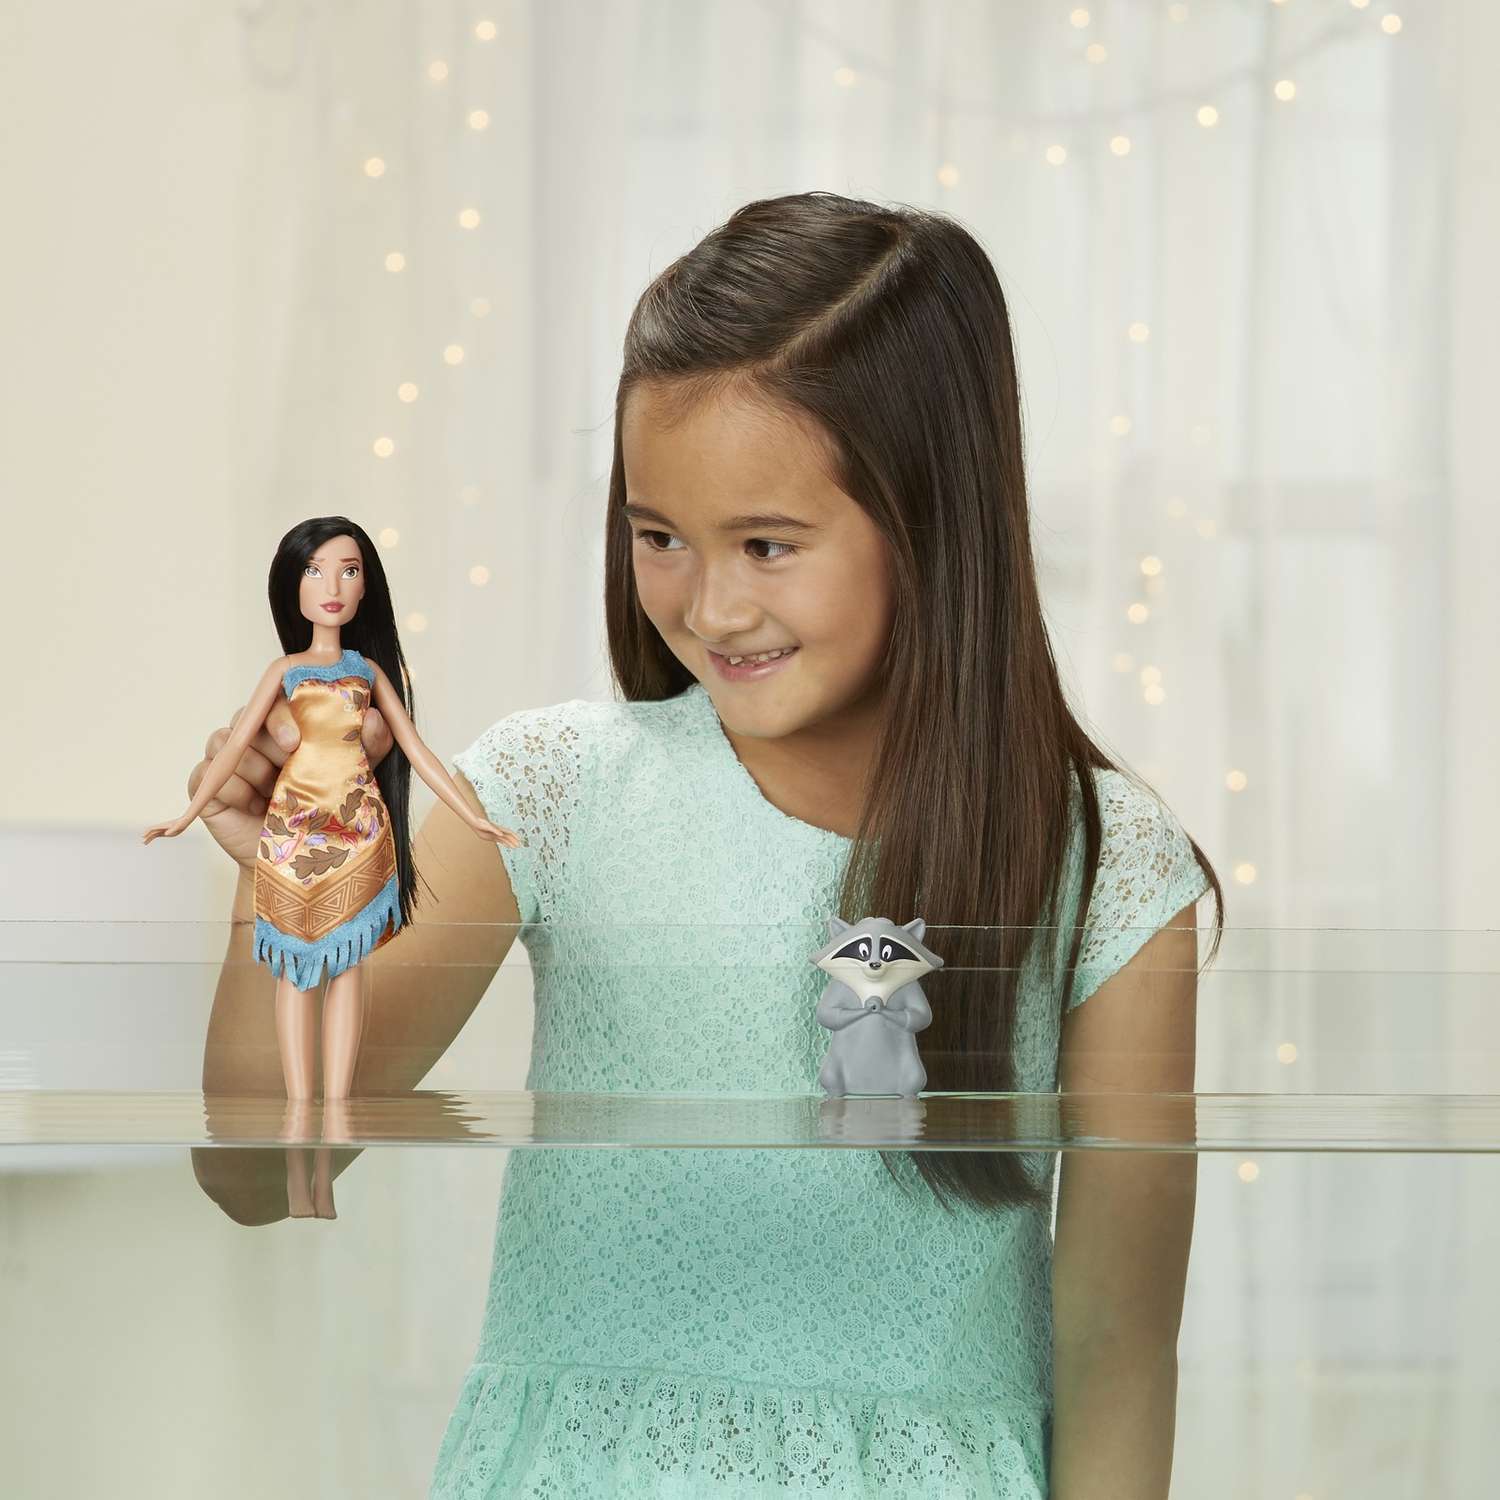 Кукла Princess водная тематика в ассортименте E0053EU4 - фото 23